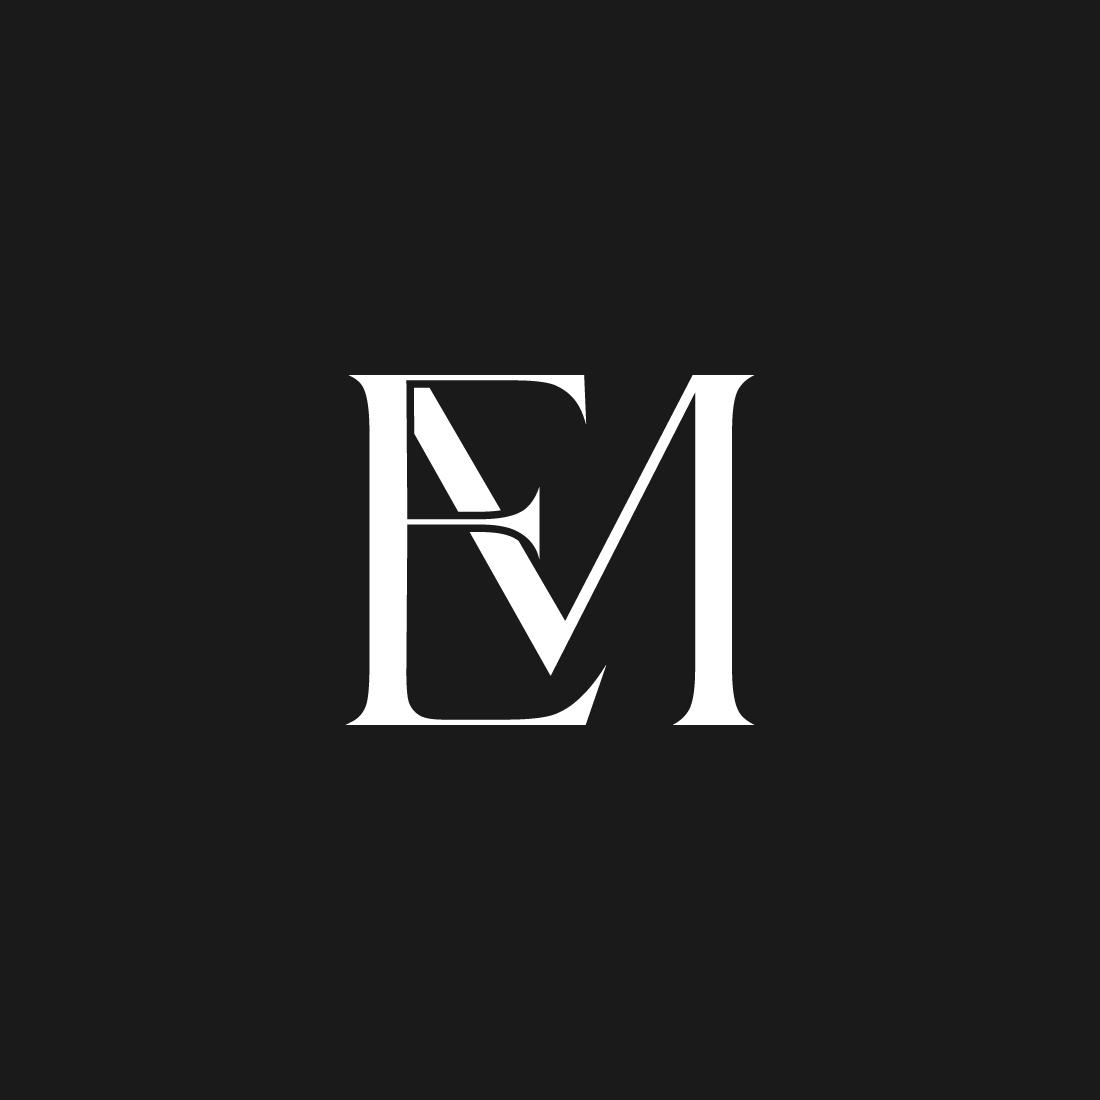 EM logo Design preview image.